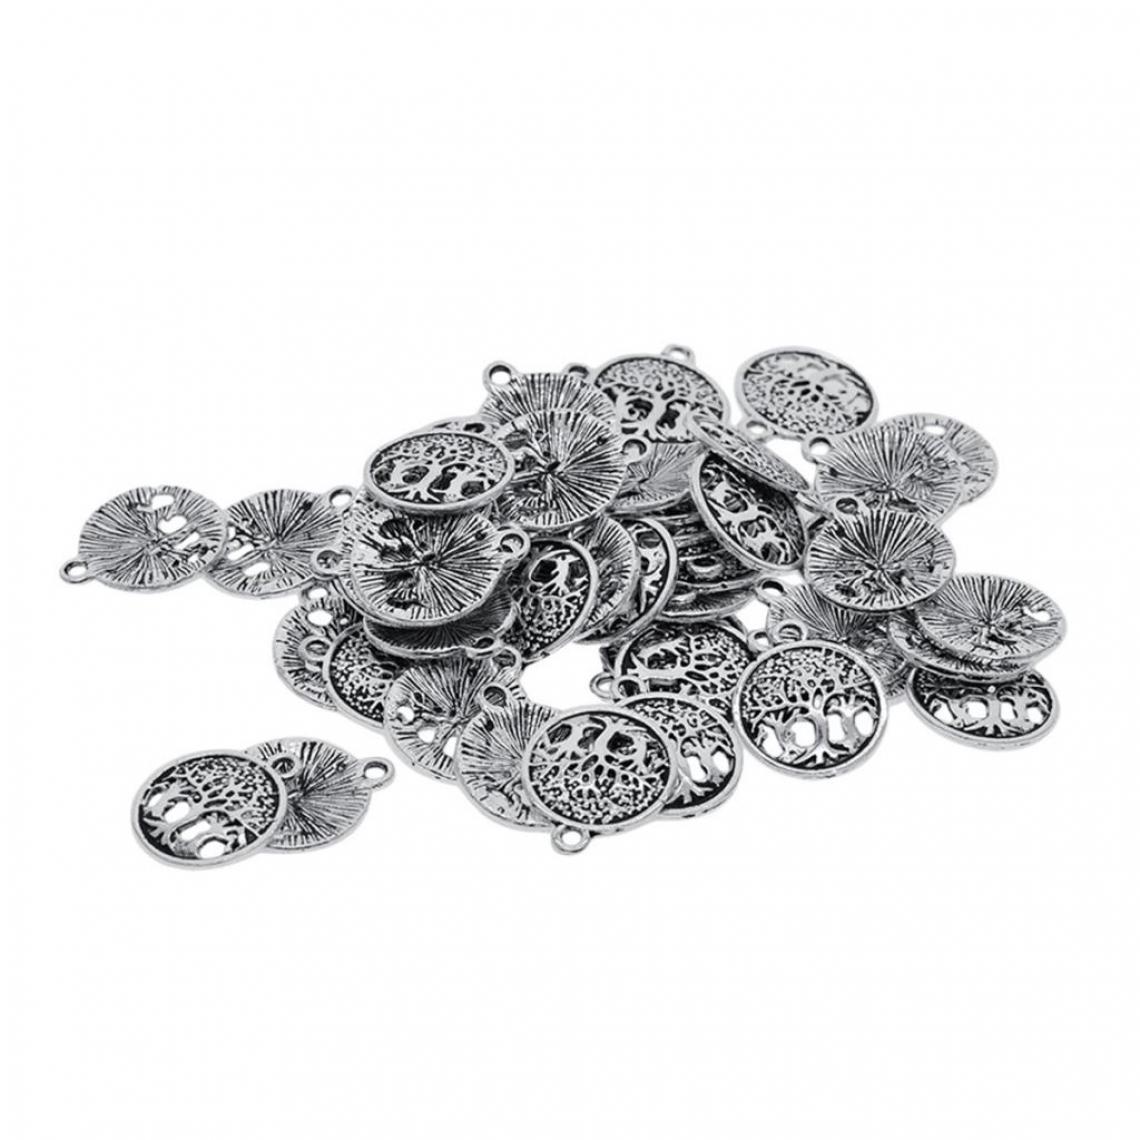 marque generique - 50pcs Arbre De La Vie Tibet Argent Charmes Pour La Fabrication De Bijoux Yoga Bracelets - Perles